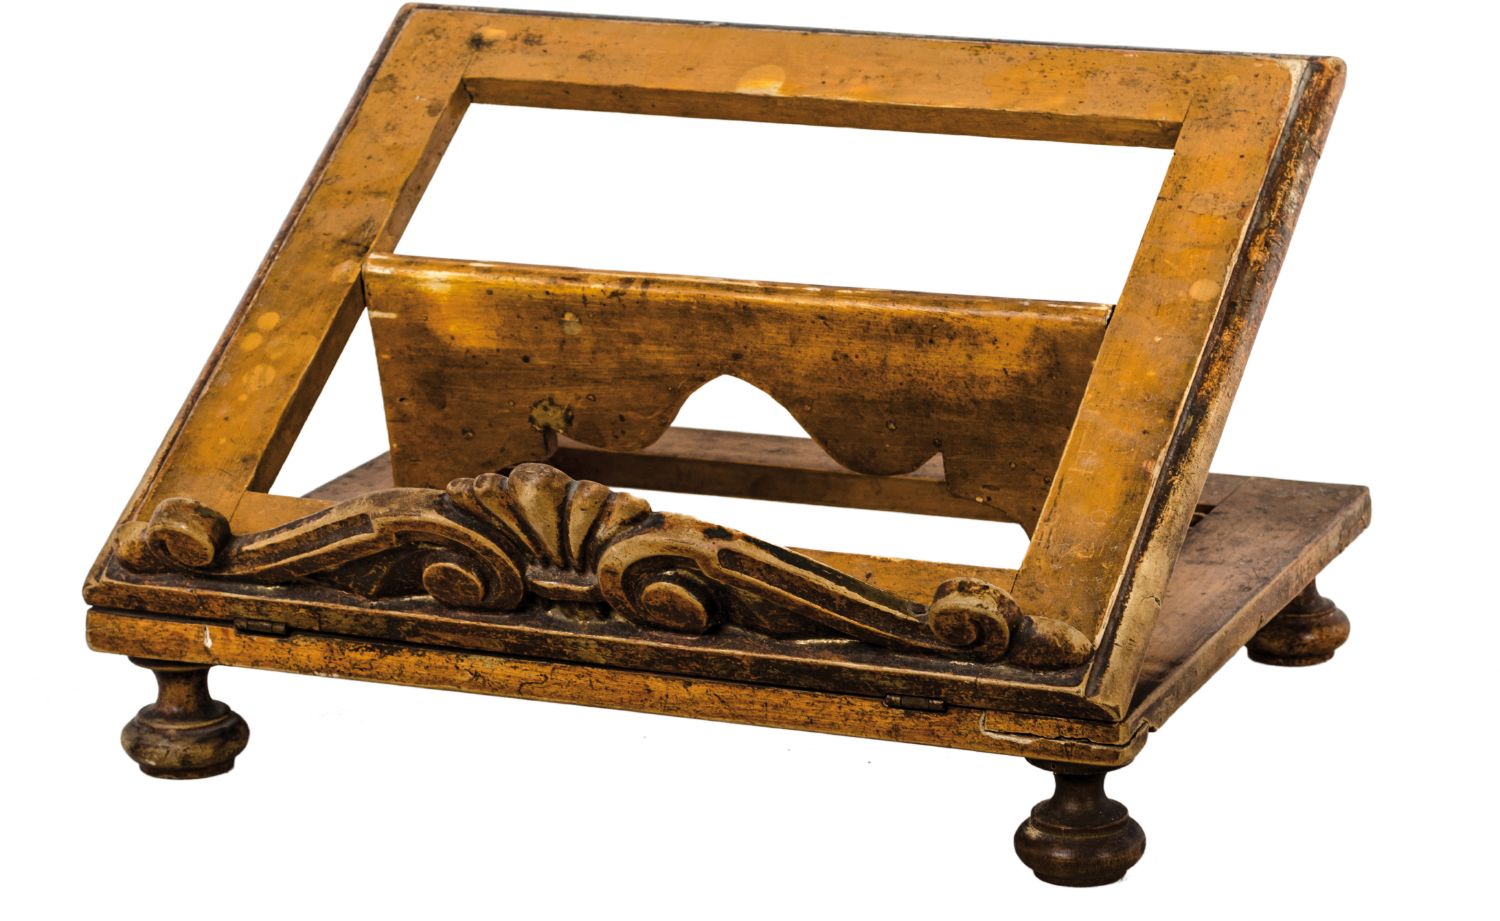 LEGGIO in legno laccato e dorato. Italia XIX secolo Misure: h cm 38 x 31 x h 14